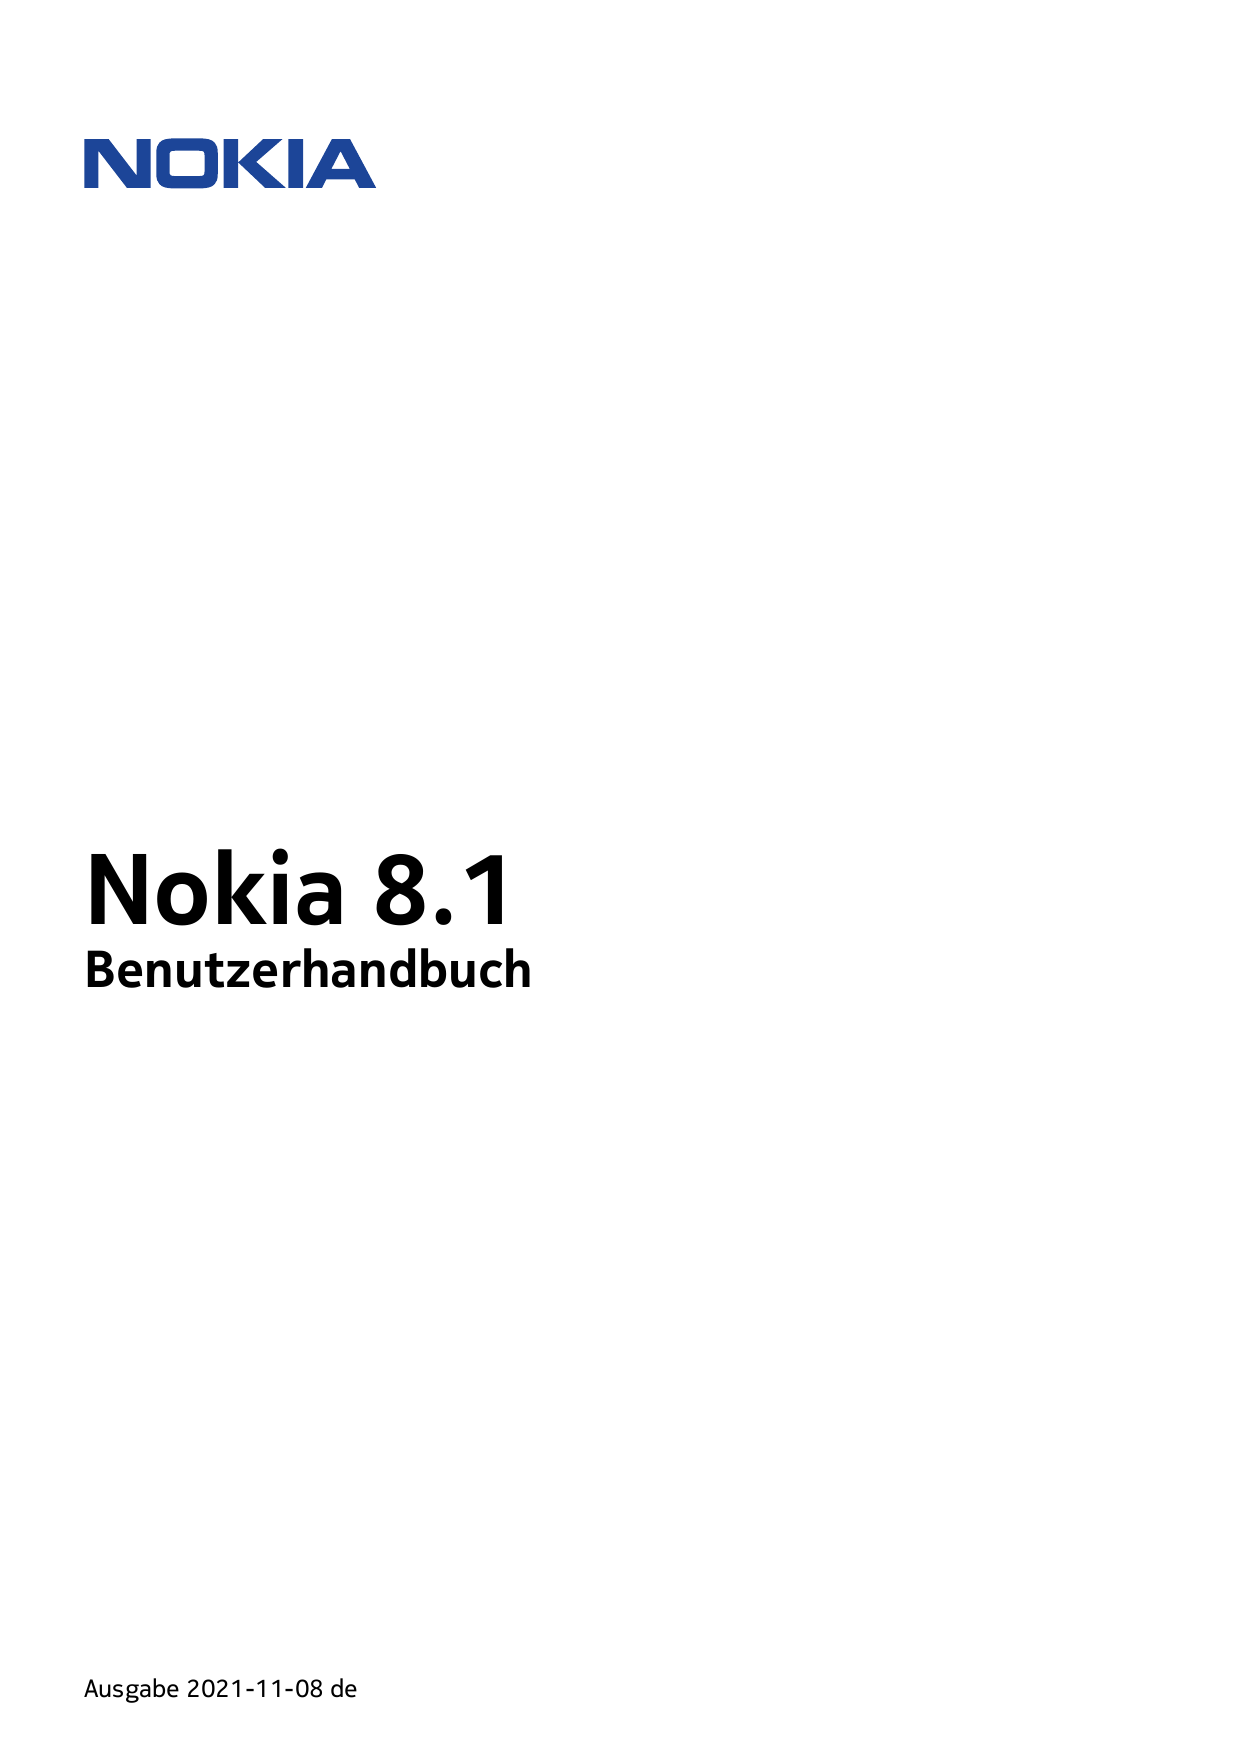 Nokia 8.1BenutzerhandbuchAusgabe 2021-11-08 de